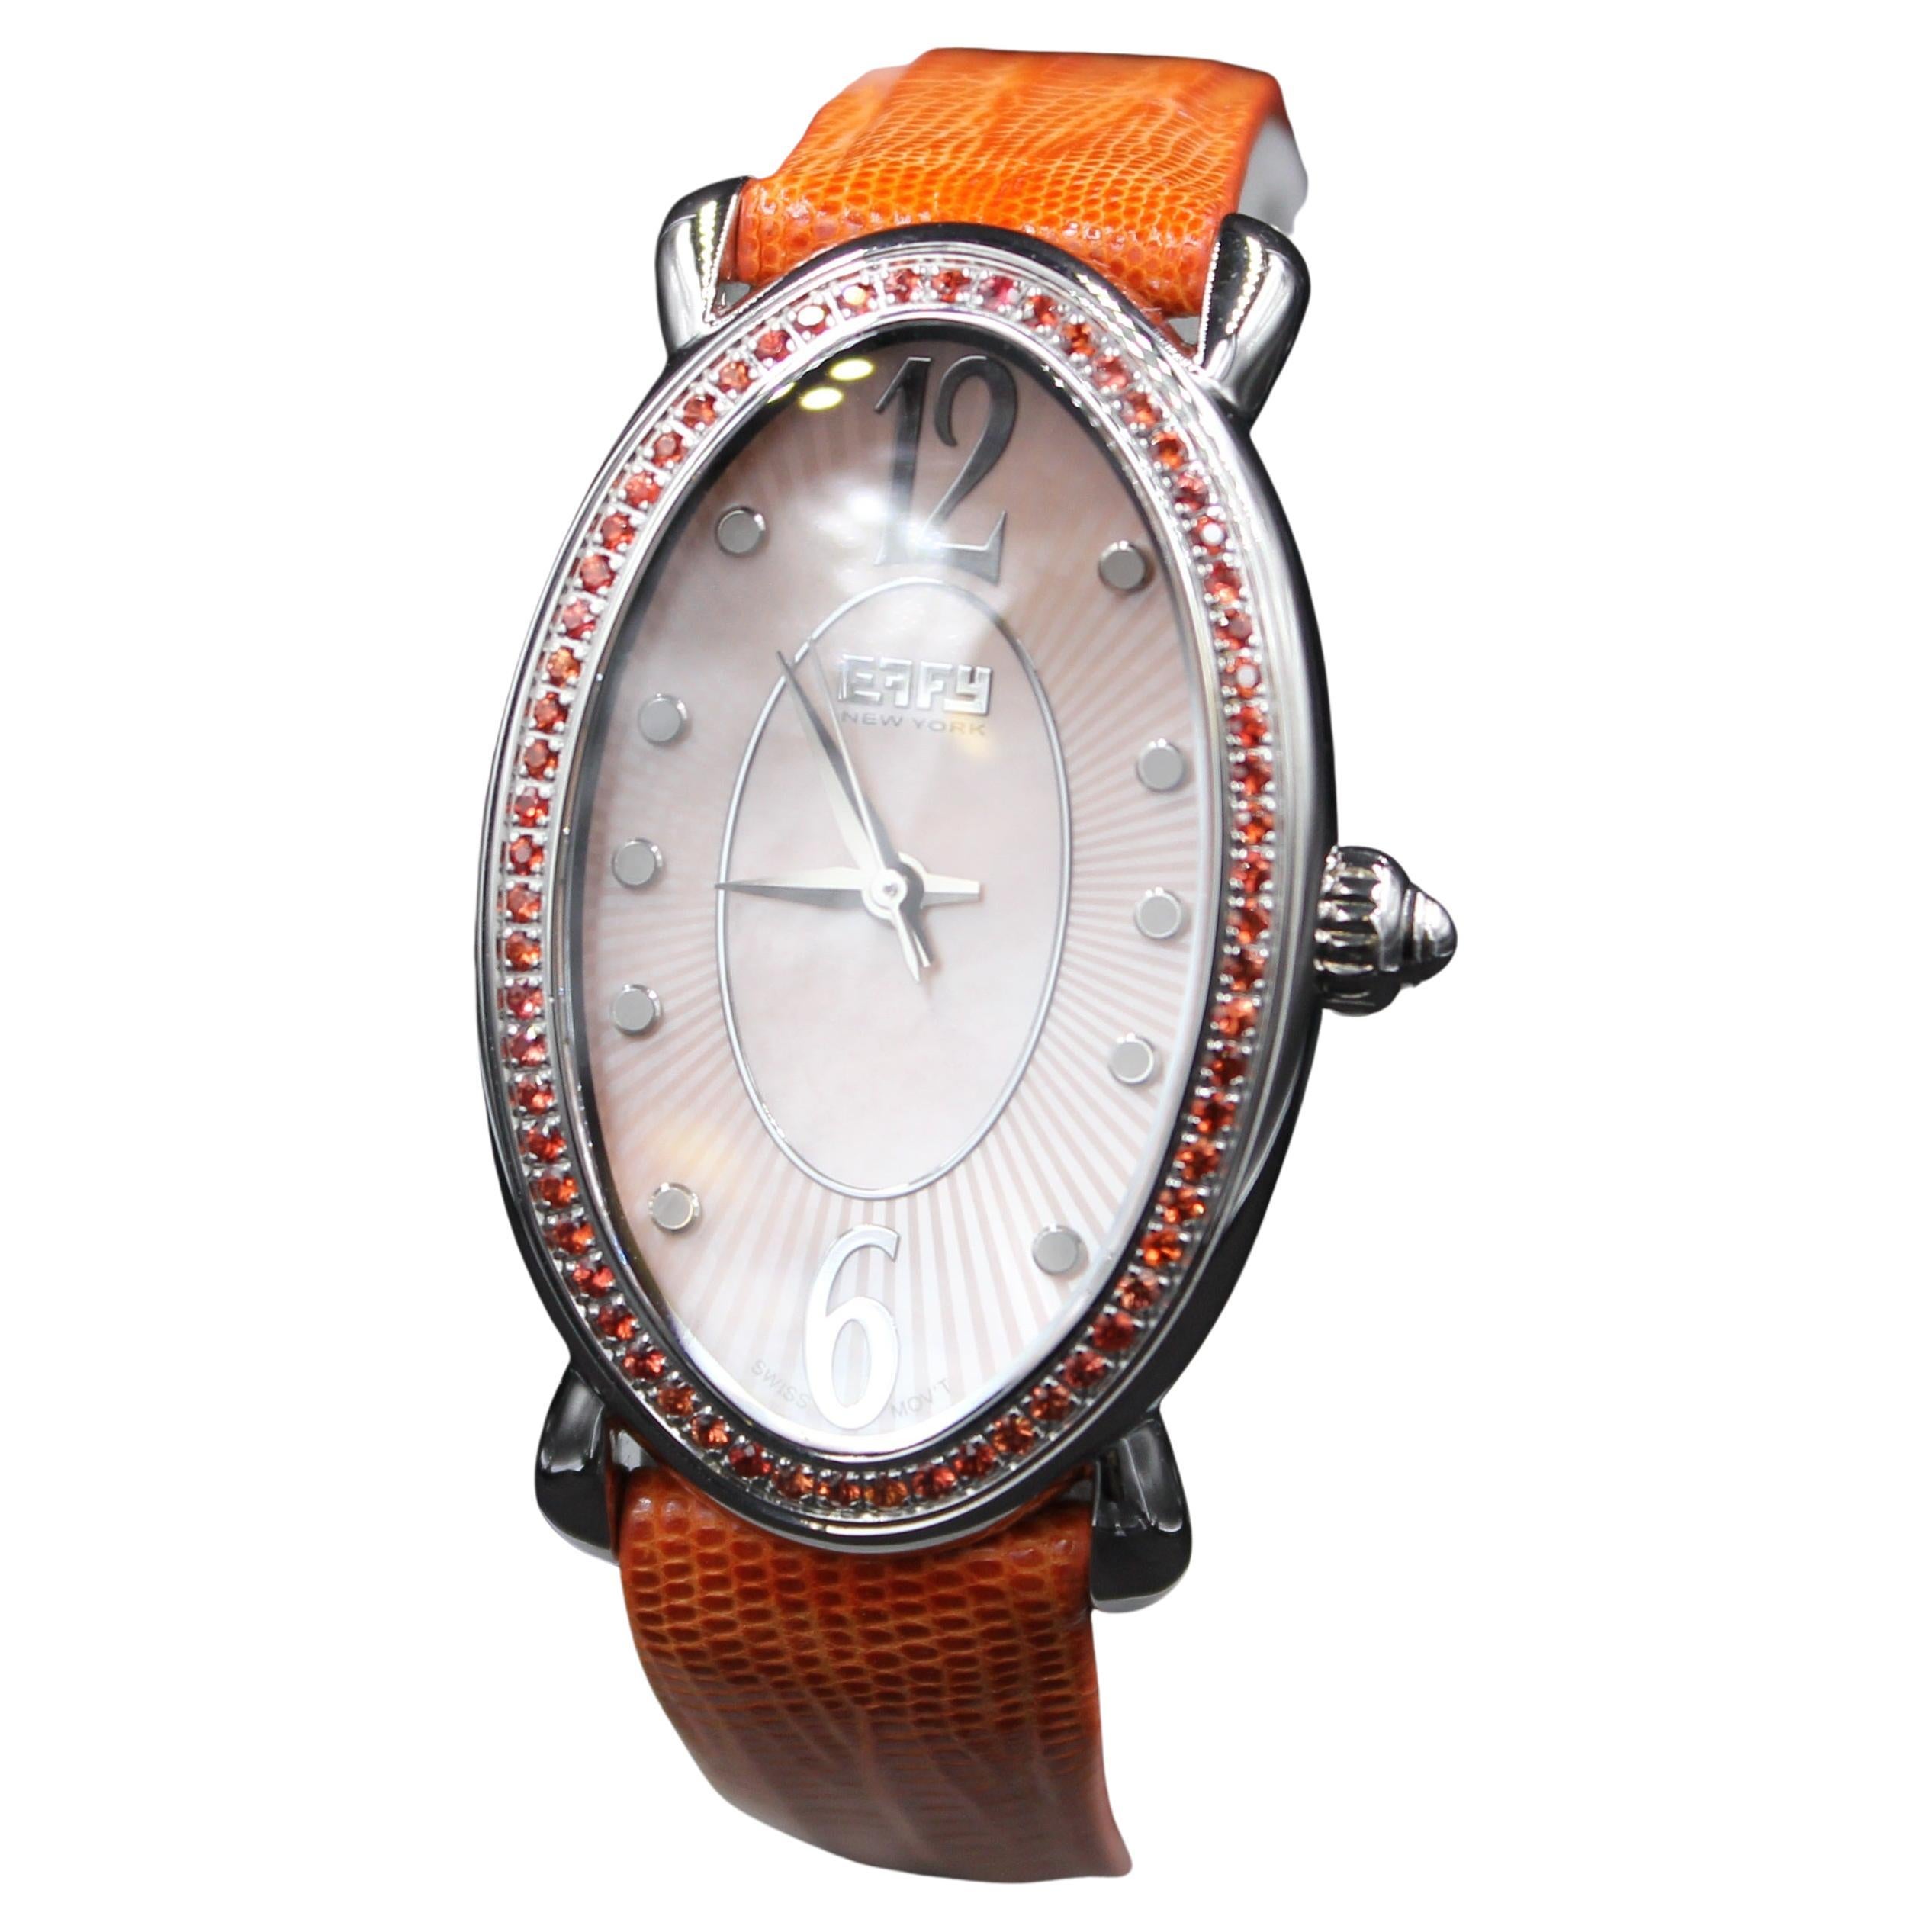 Reloj de lujo de cuarzo suizo con correa de piel exótica, zafiro naranja, diamantes y esfera pavé